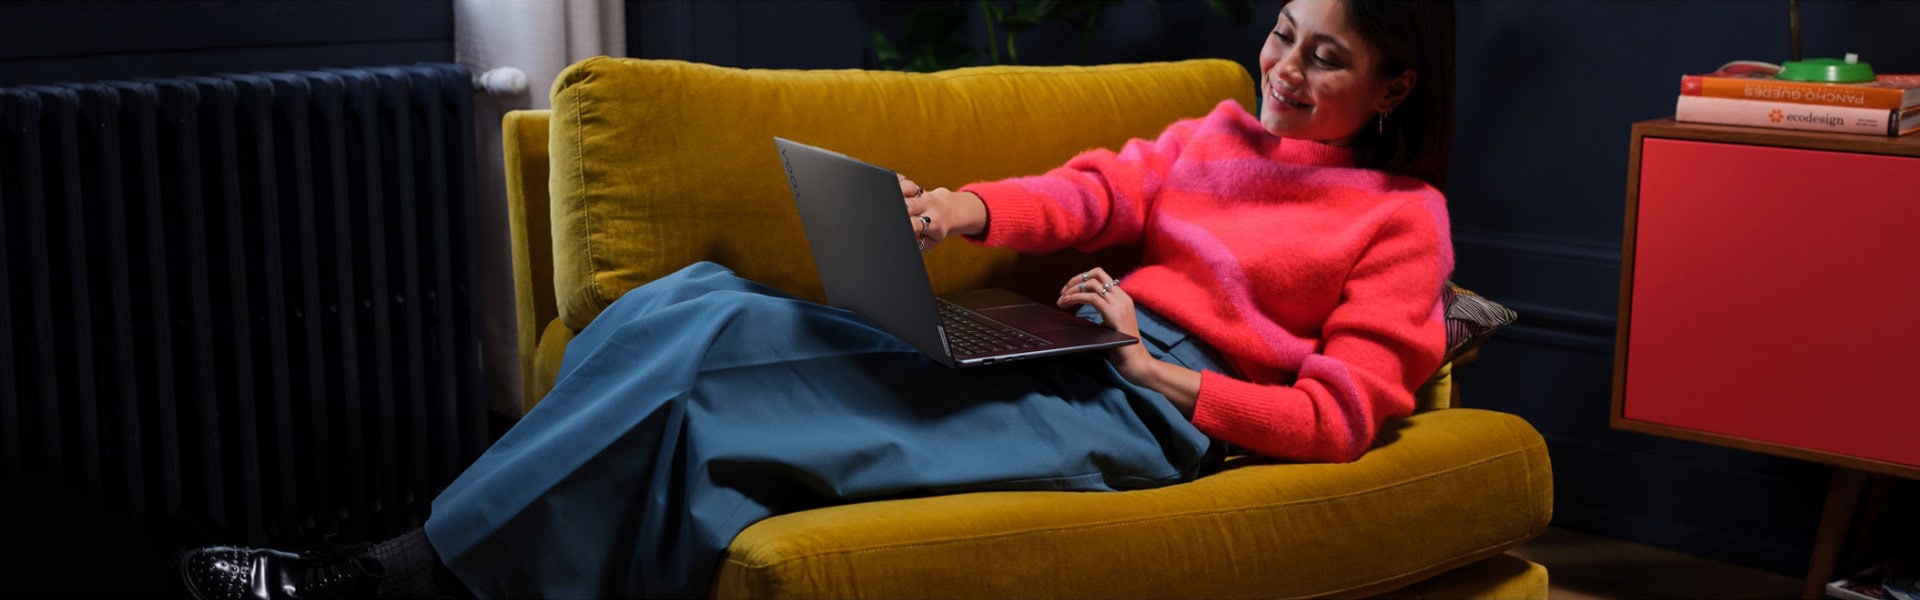 Femeie înclinată pe un scaun mare cu laptopul ei Lenovo Yoga așezat în poala ei